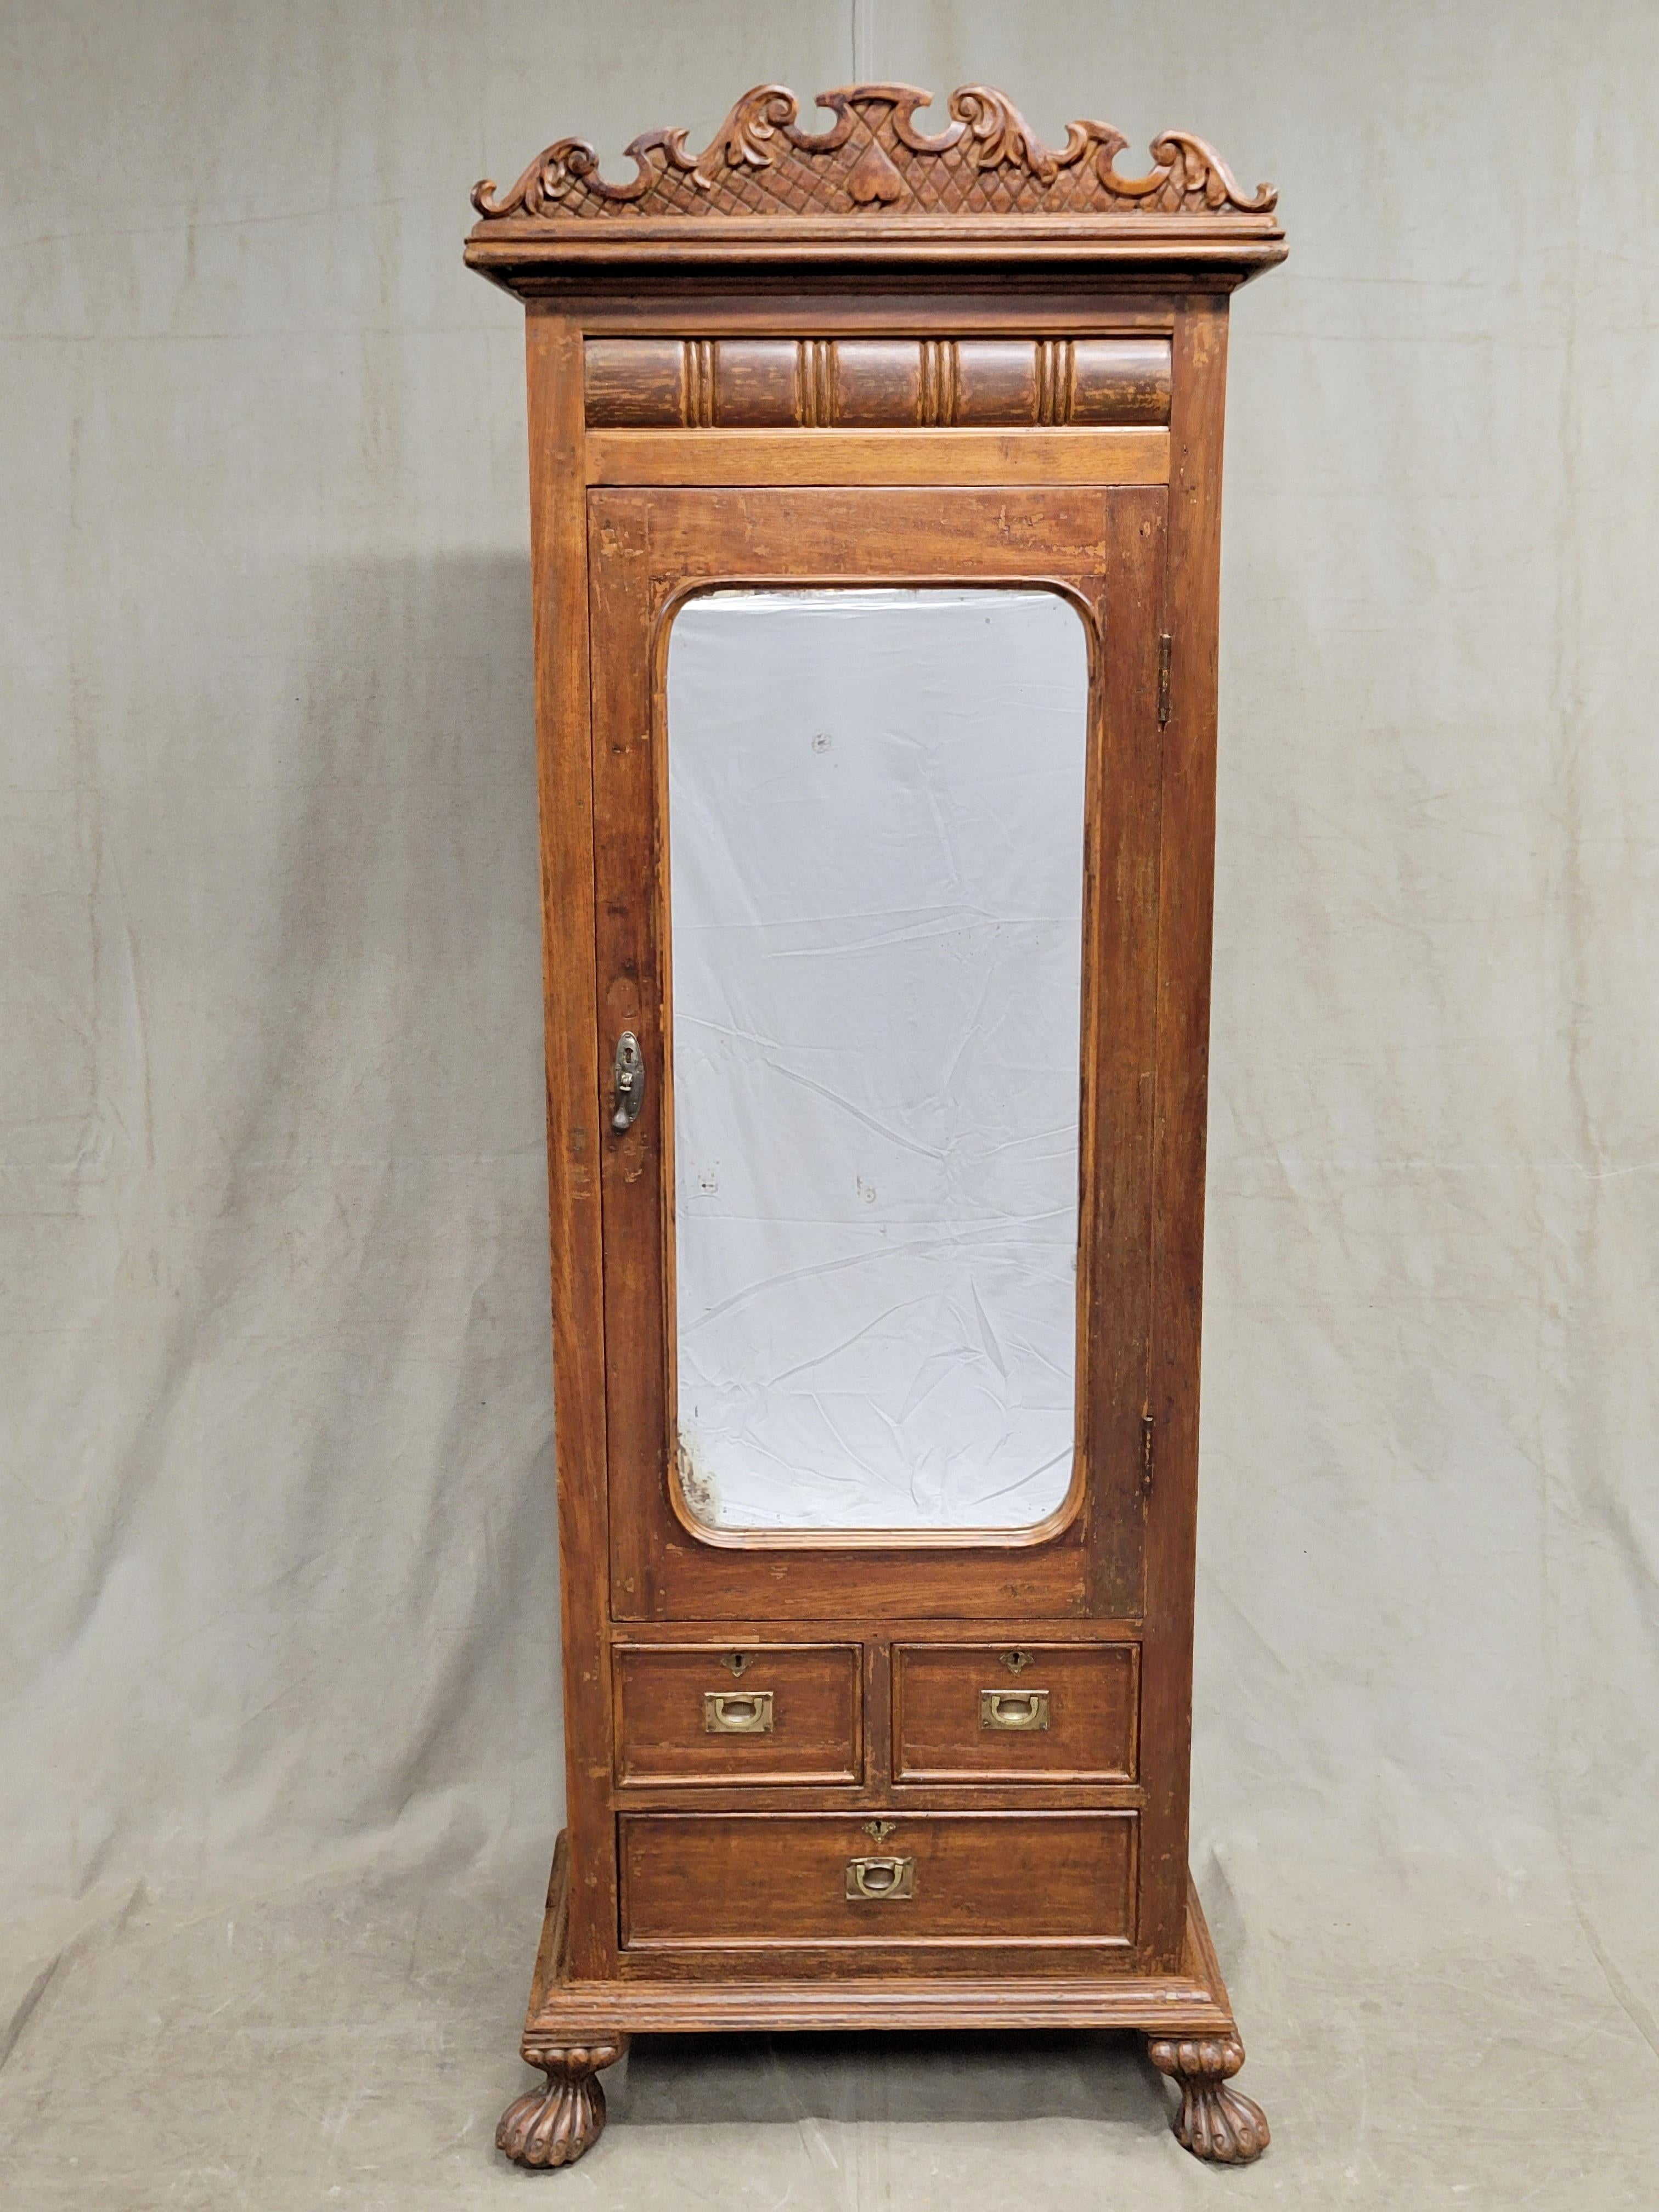 Charmante petite armoire en teck anglo-indien avec miroir, datant de la fin des années 1800 ou du début des années 1900. La couronne curviligne sculptée à la main, les pieds surdimensionnés et la petite taille de l'ensemble confèrent à cette pièce